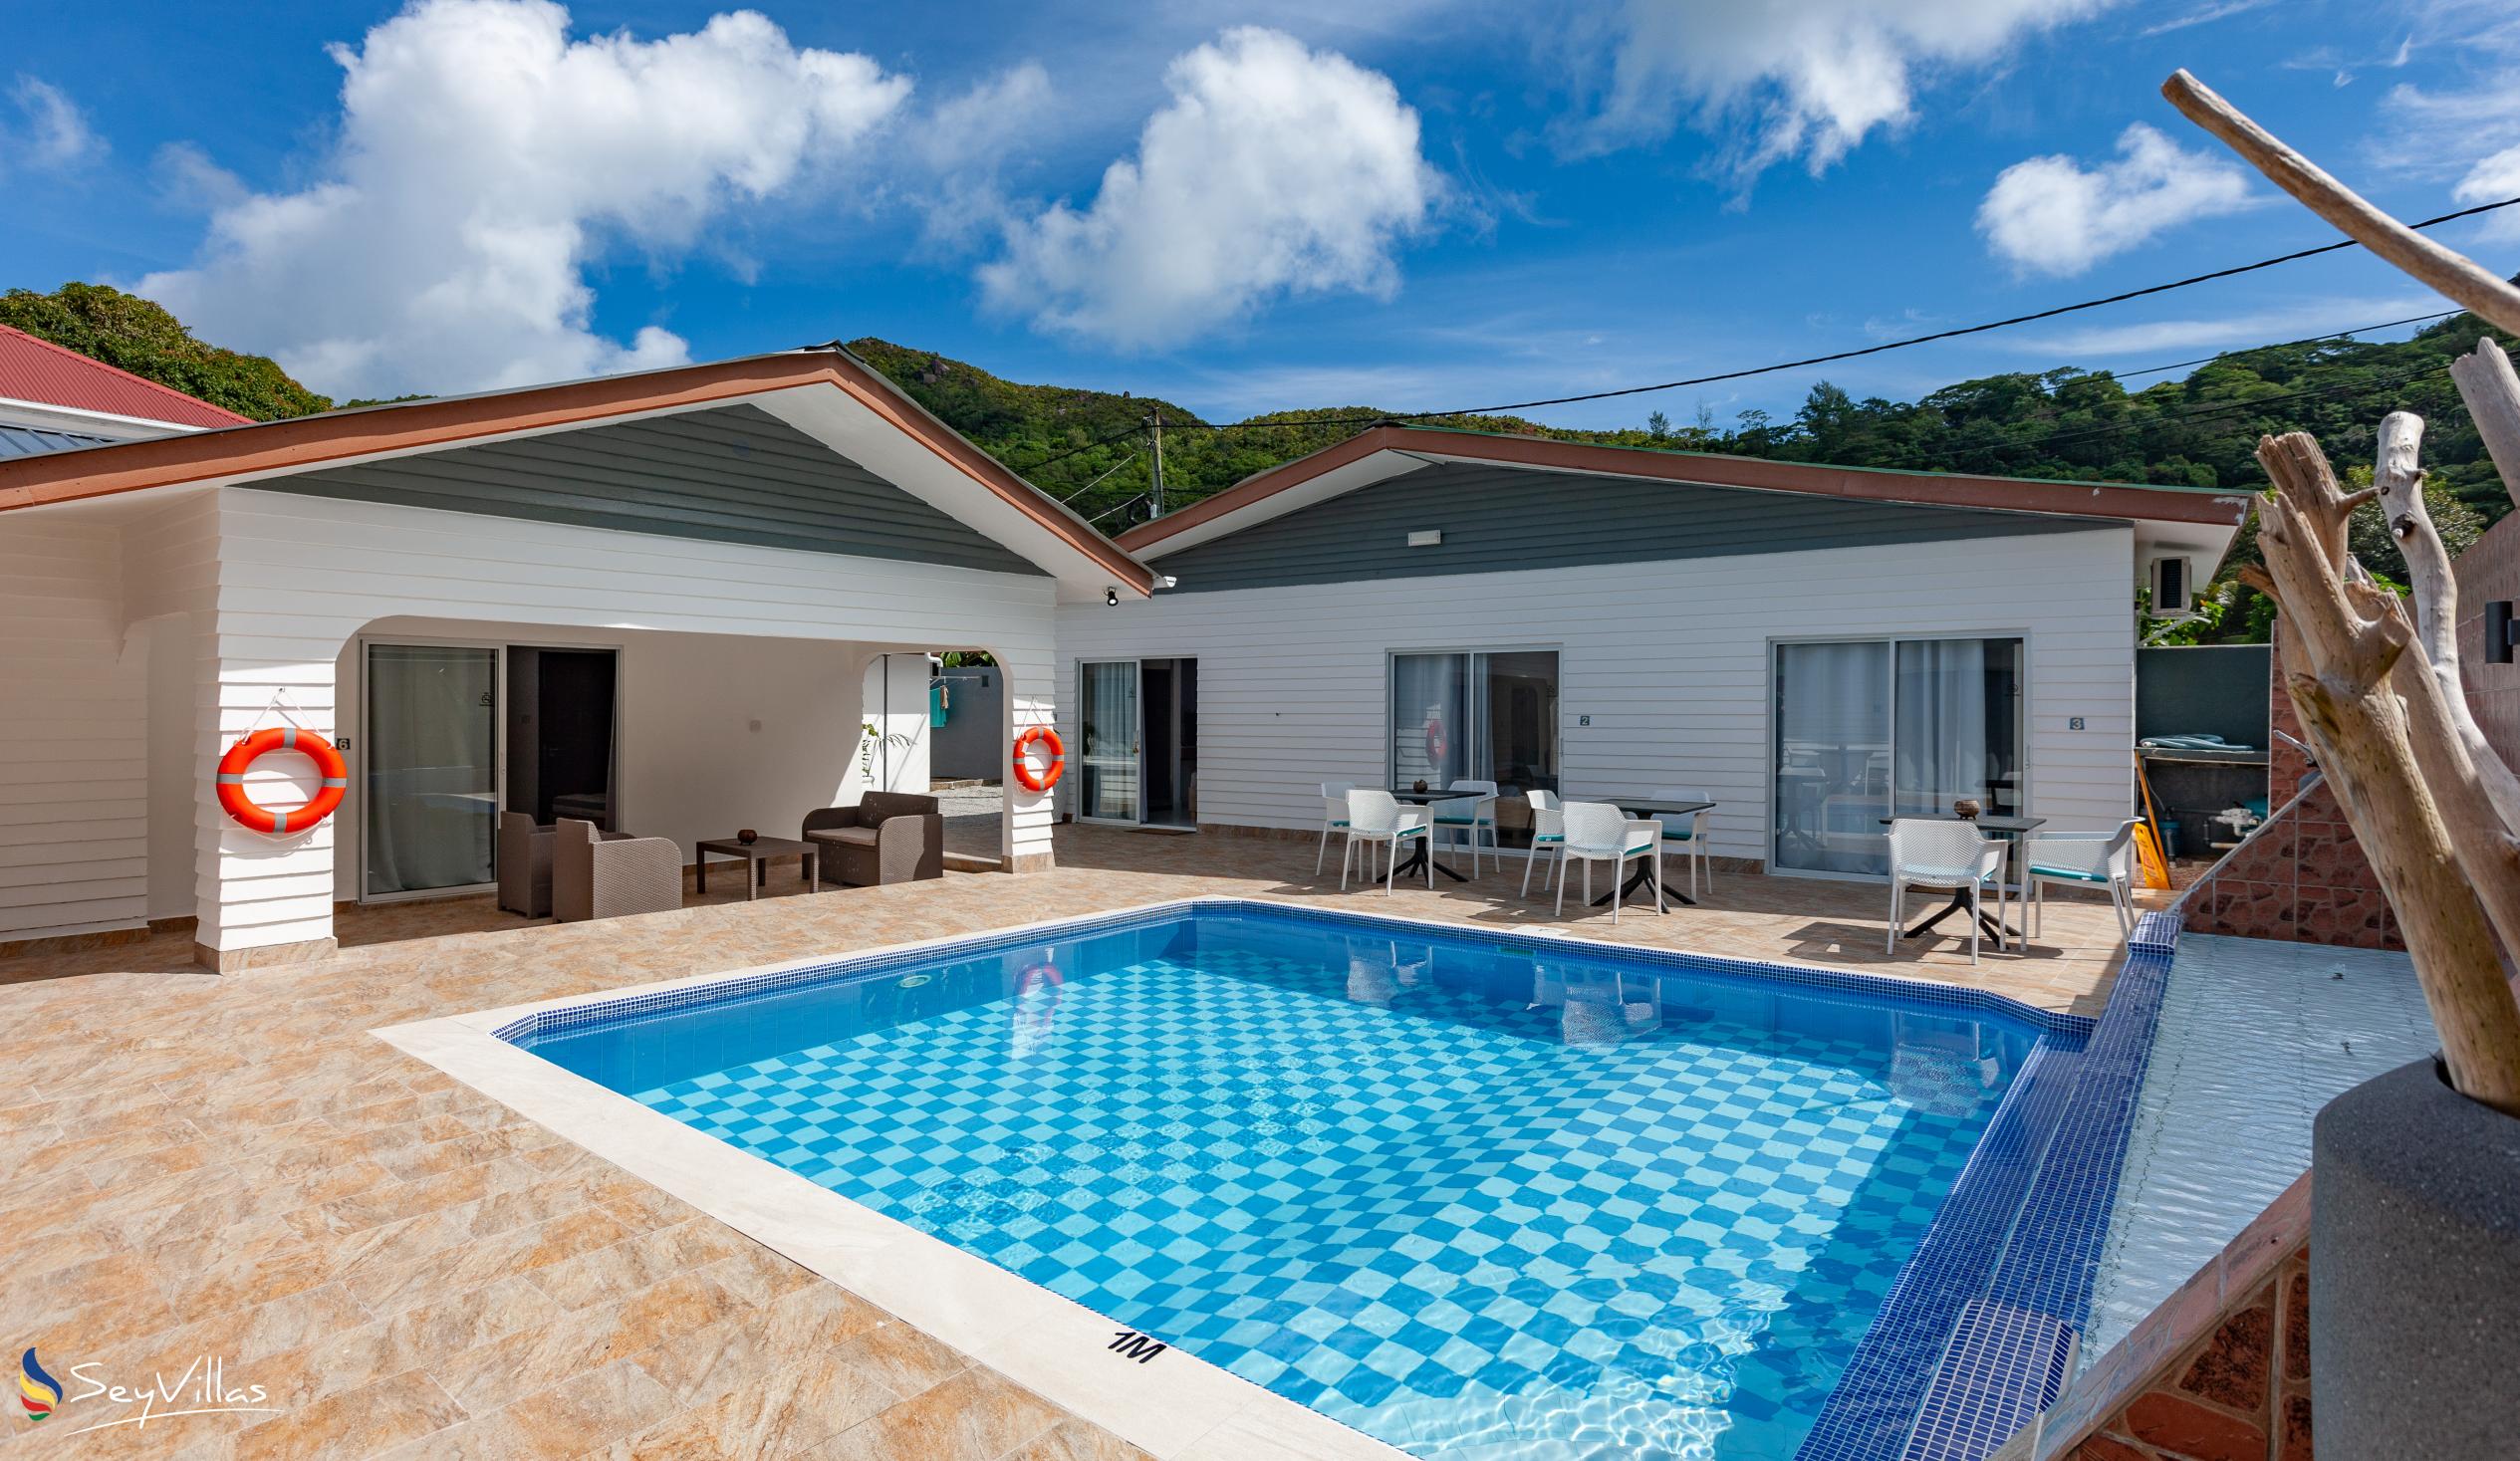 Photo 1: Hotel Plein Soleil - Outdoor area - Praslin (Seychelles)